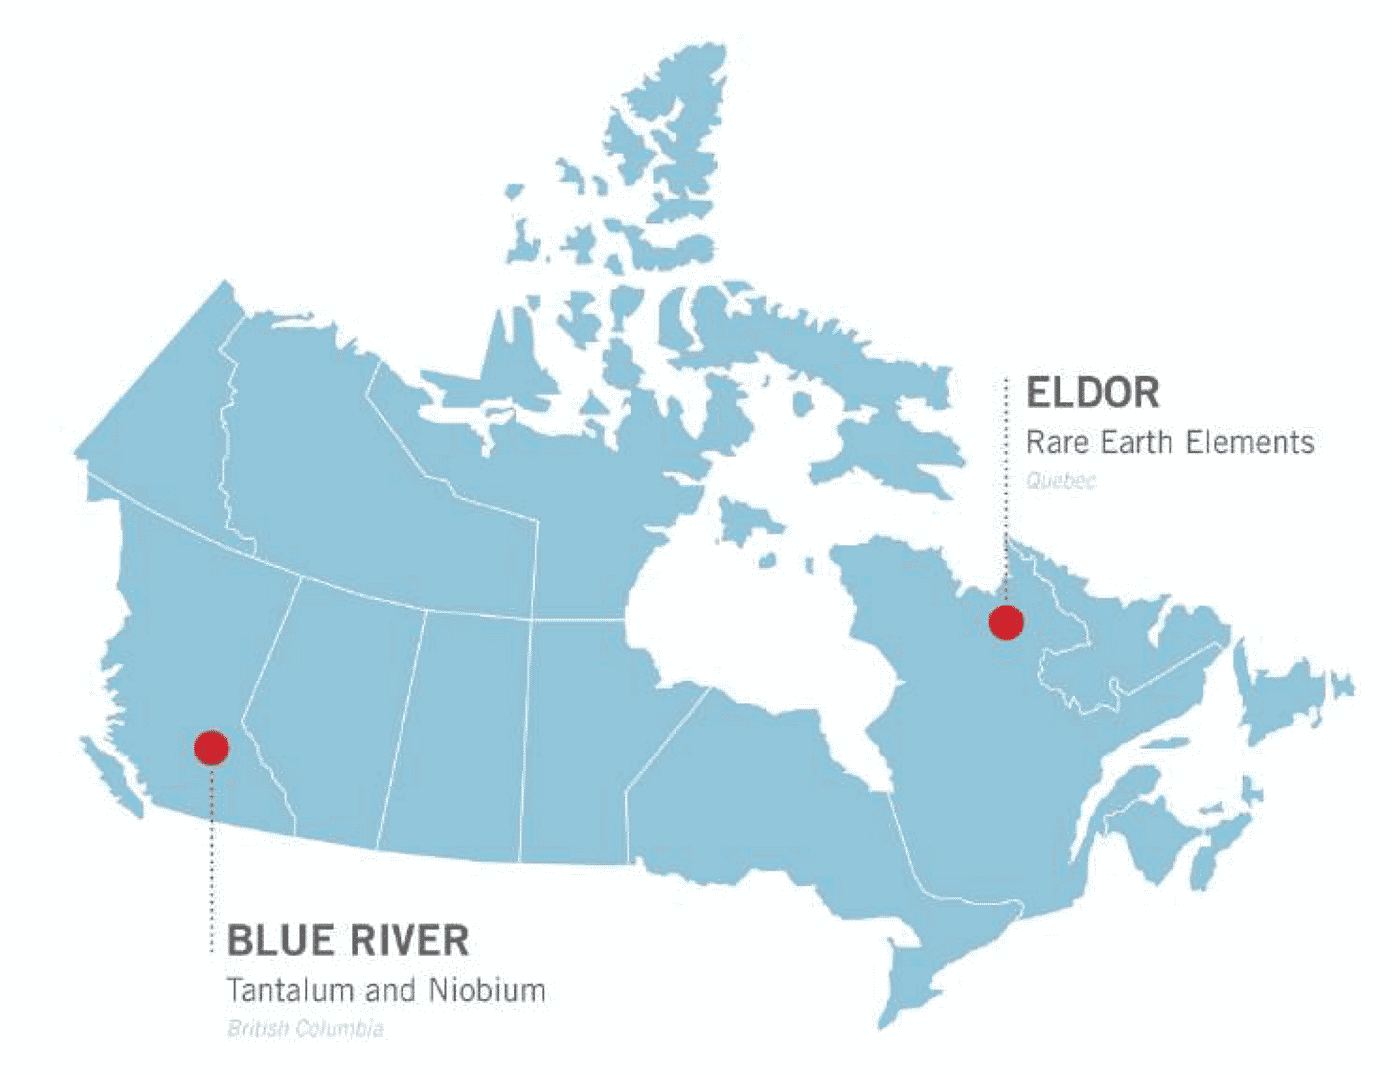 Two advanced projects: 1. Ashram Rare Earth Project, Eldor Property, Quebec 2. Upper Fir Tantalum / Niobium Project, Blue River, BC